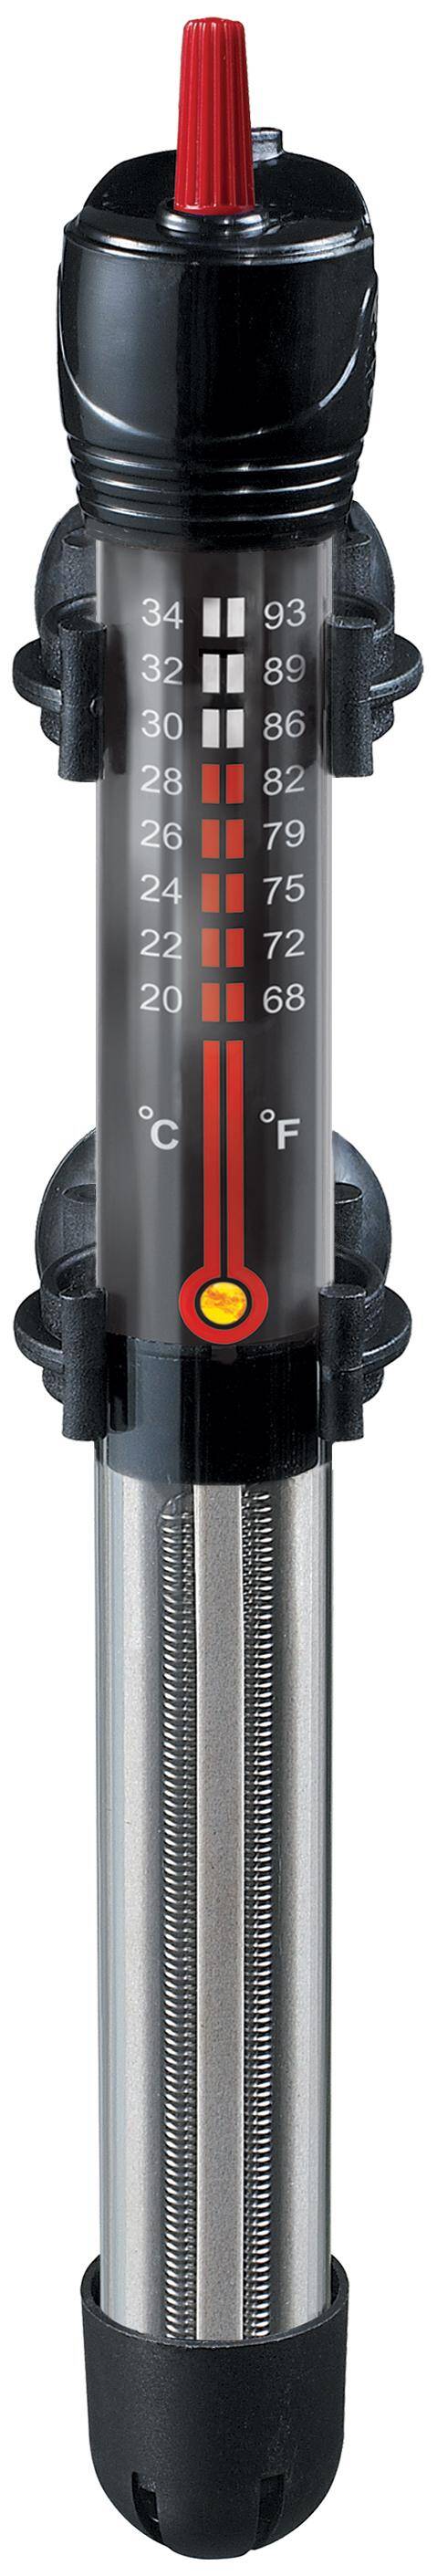 AquaT 100W Heizgerät mit Thermostat Happet (S-G100XI)